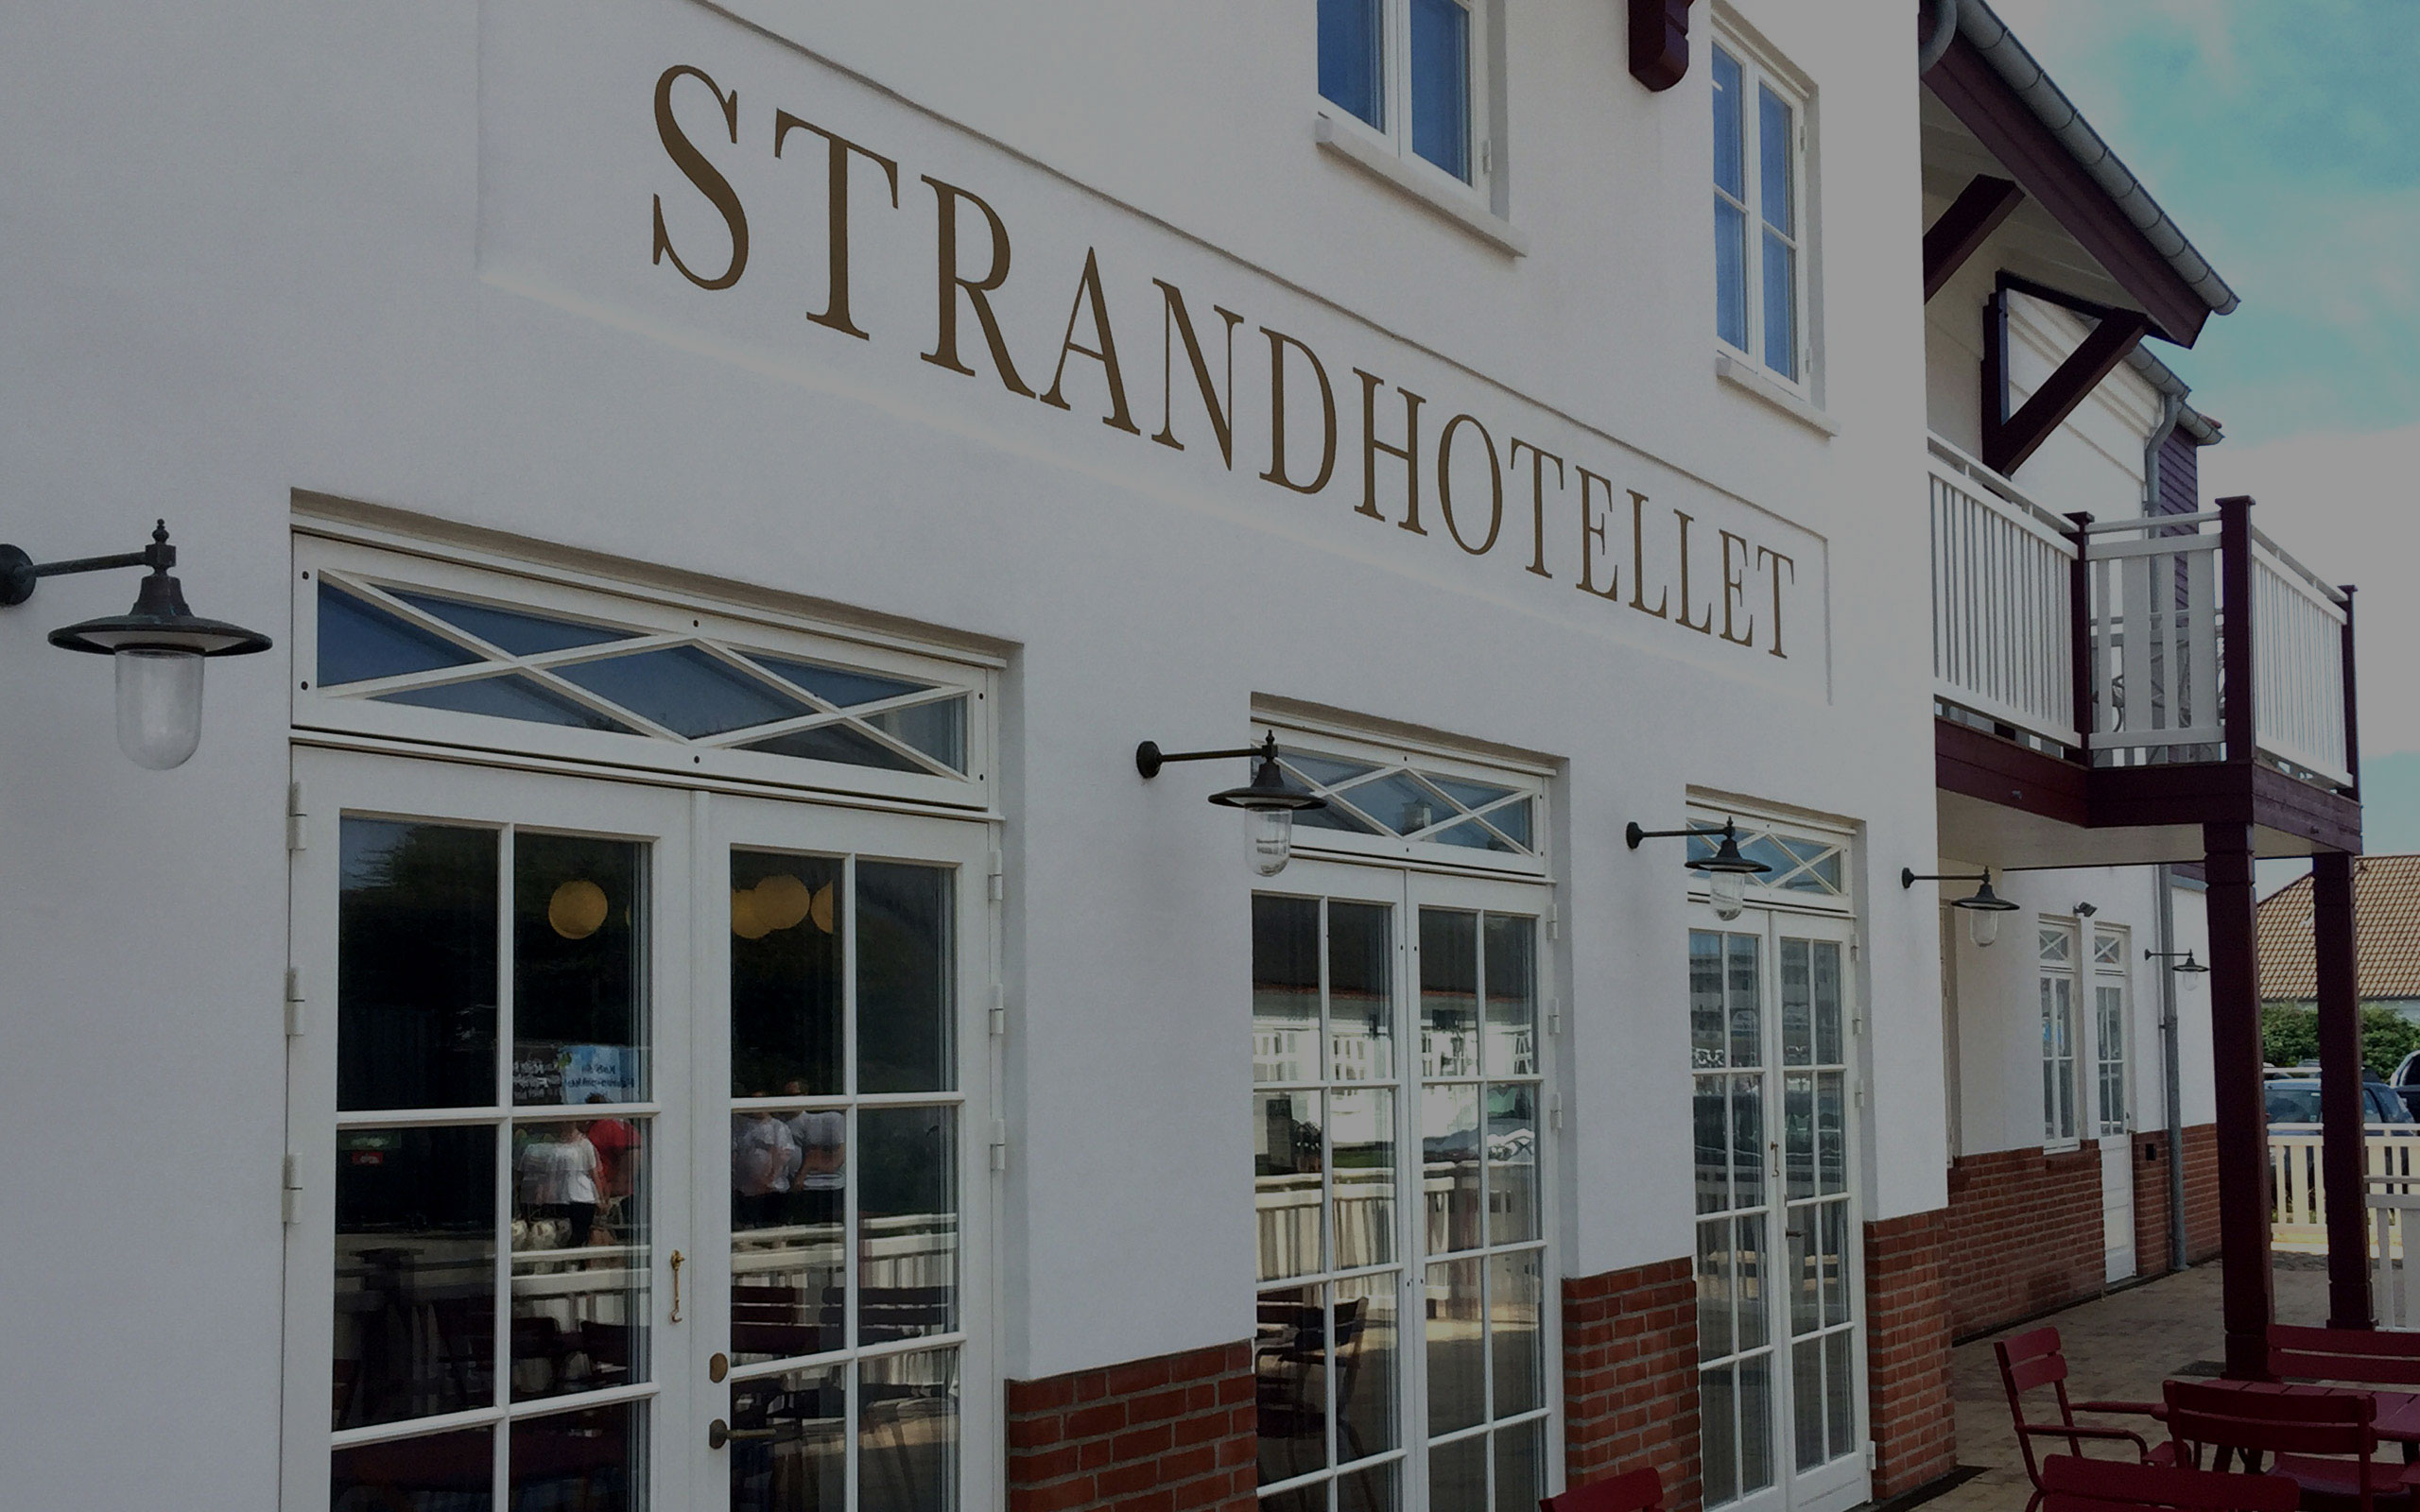 Strandhotellet_cover